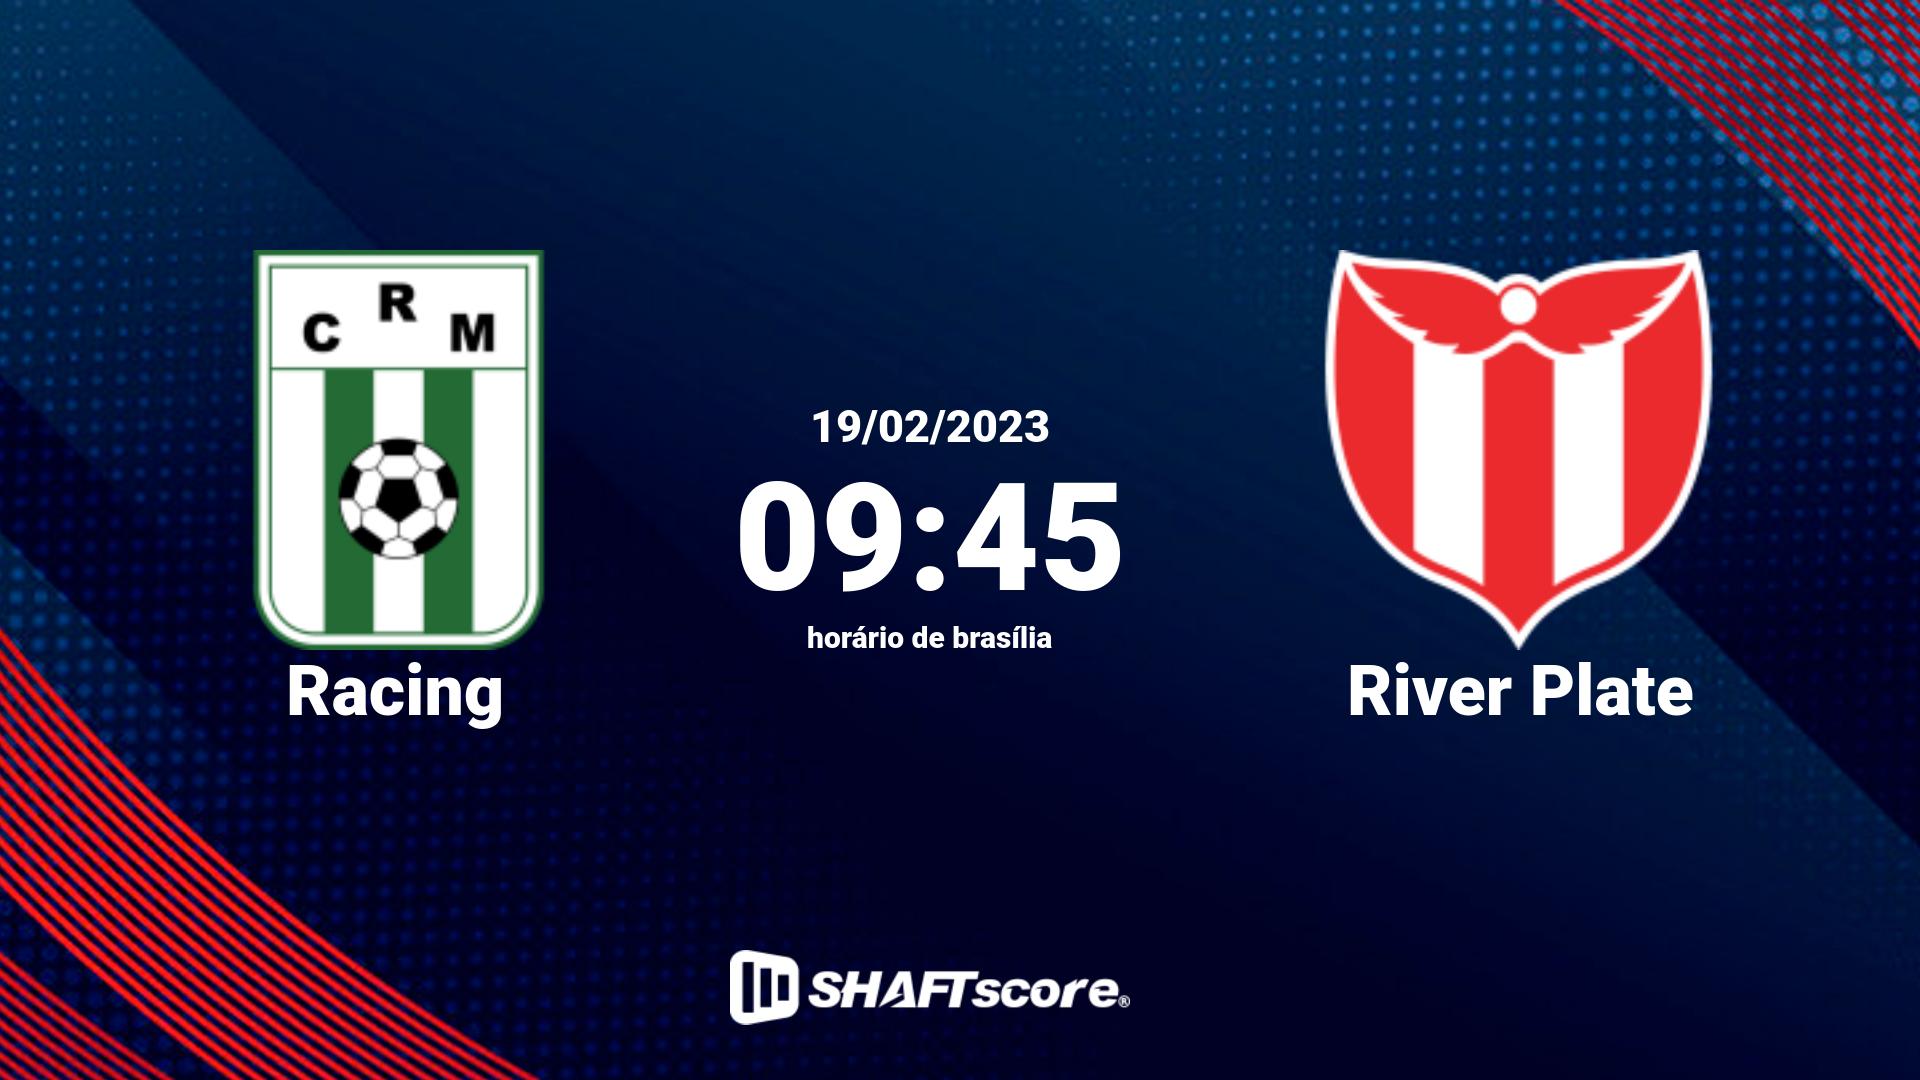 Estatísticas do jogo Racing vs River Plate 19.02 09:45